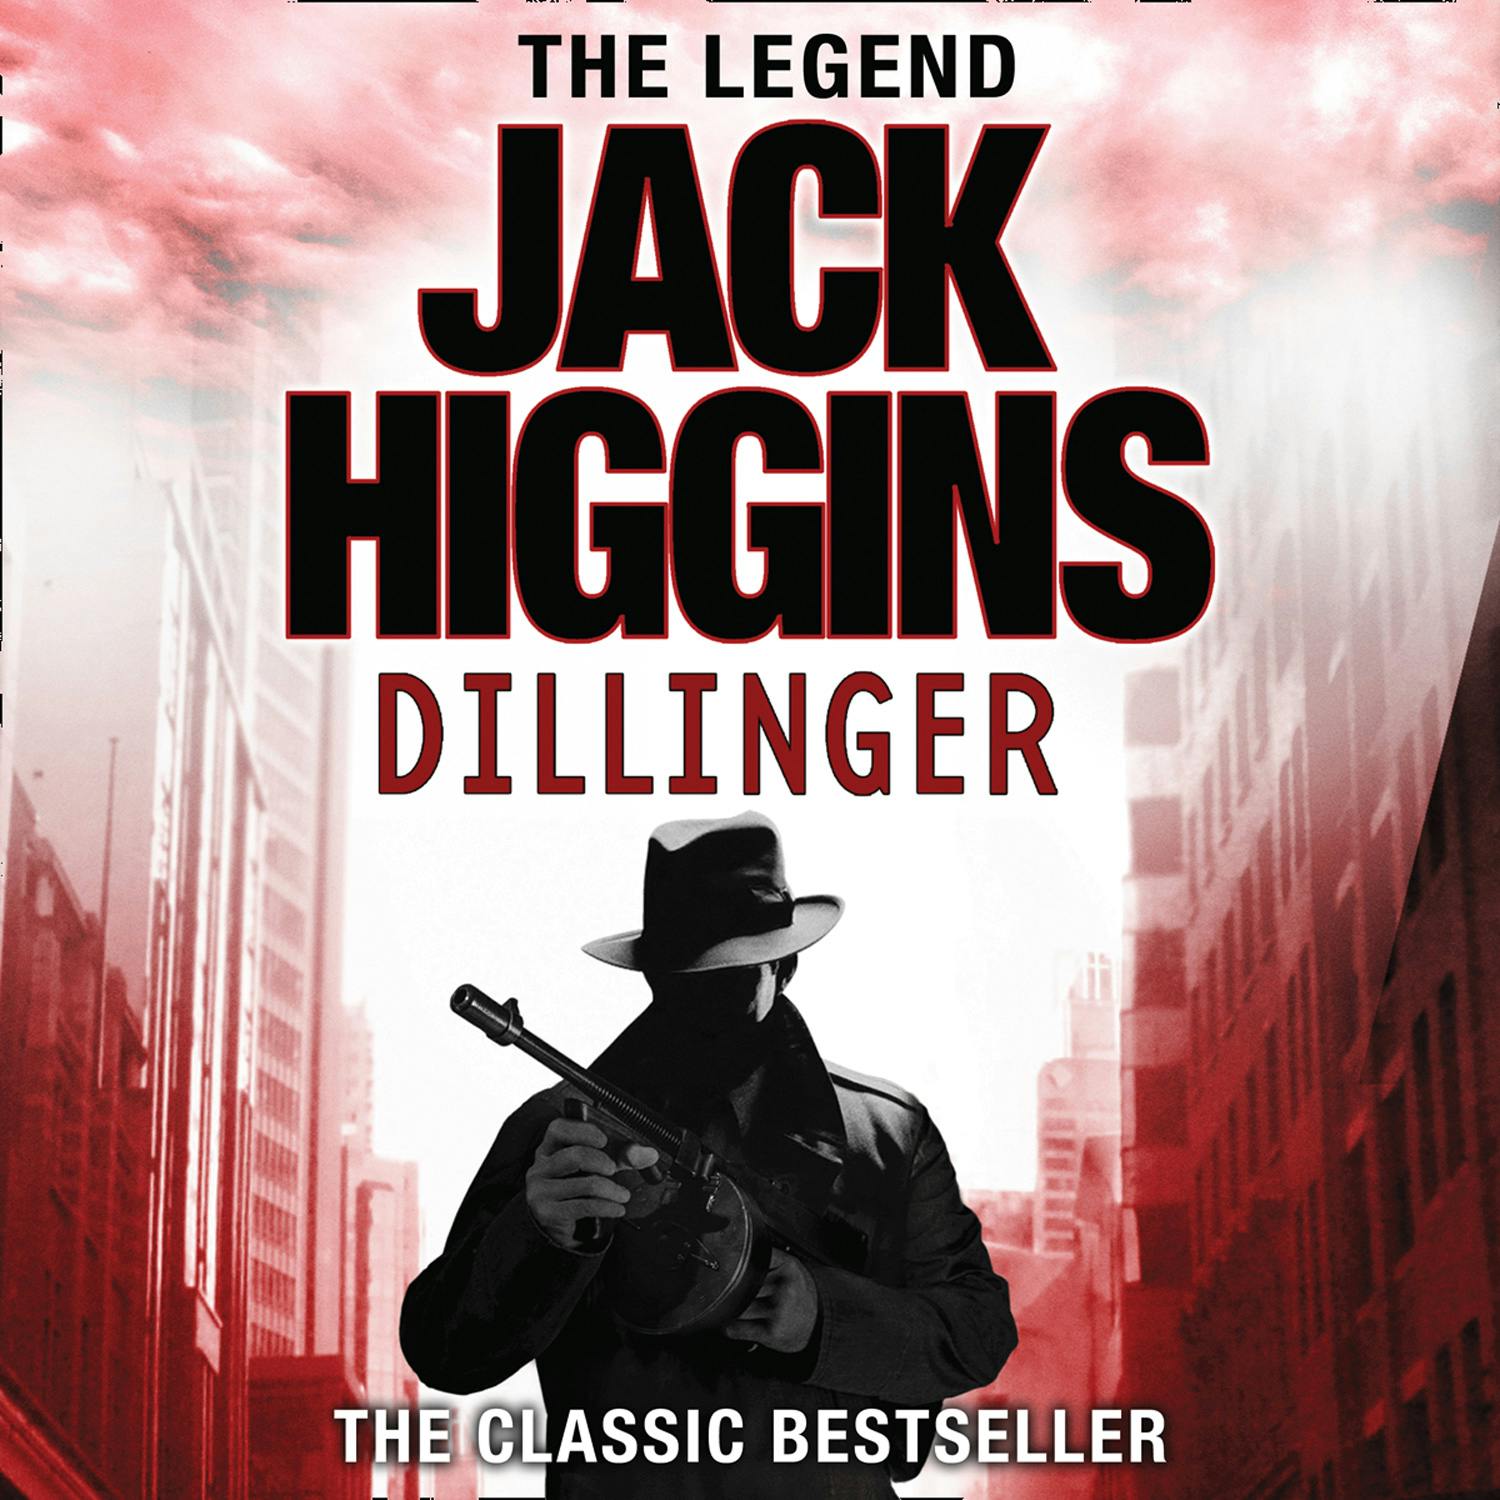 Dillinger - Jack Higgins